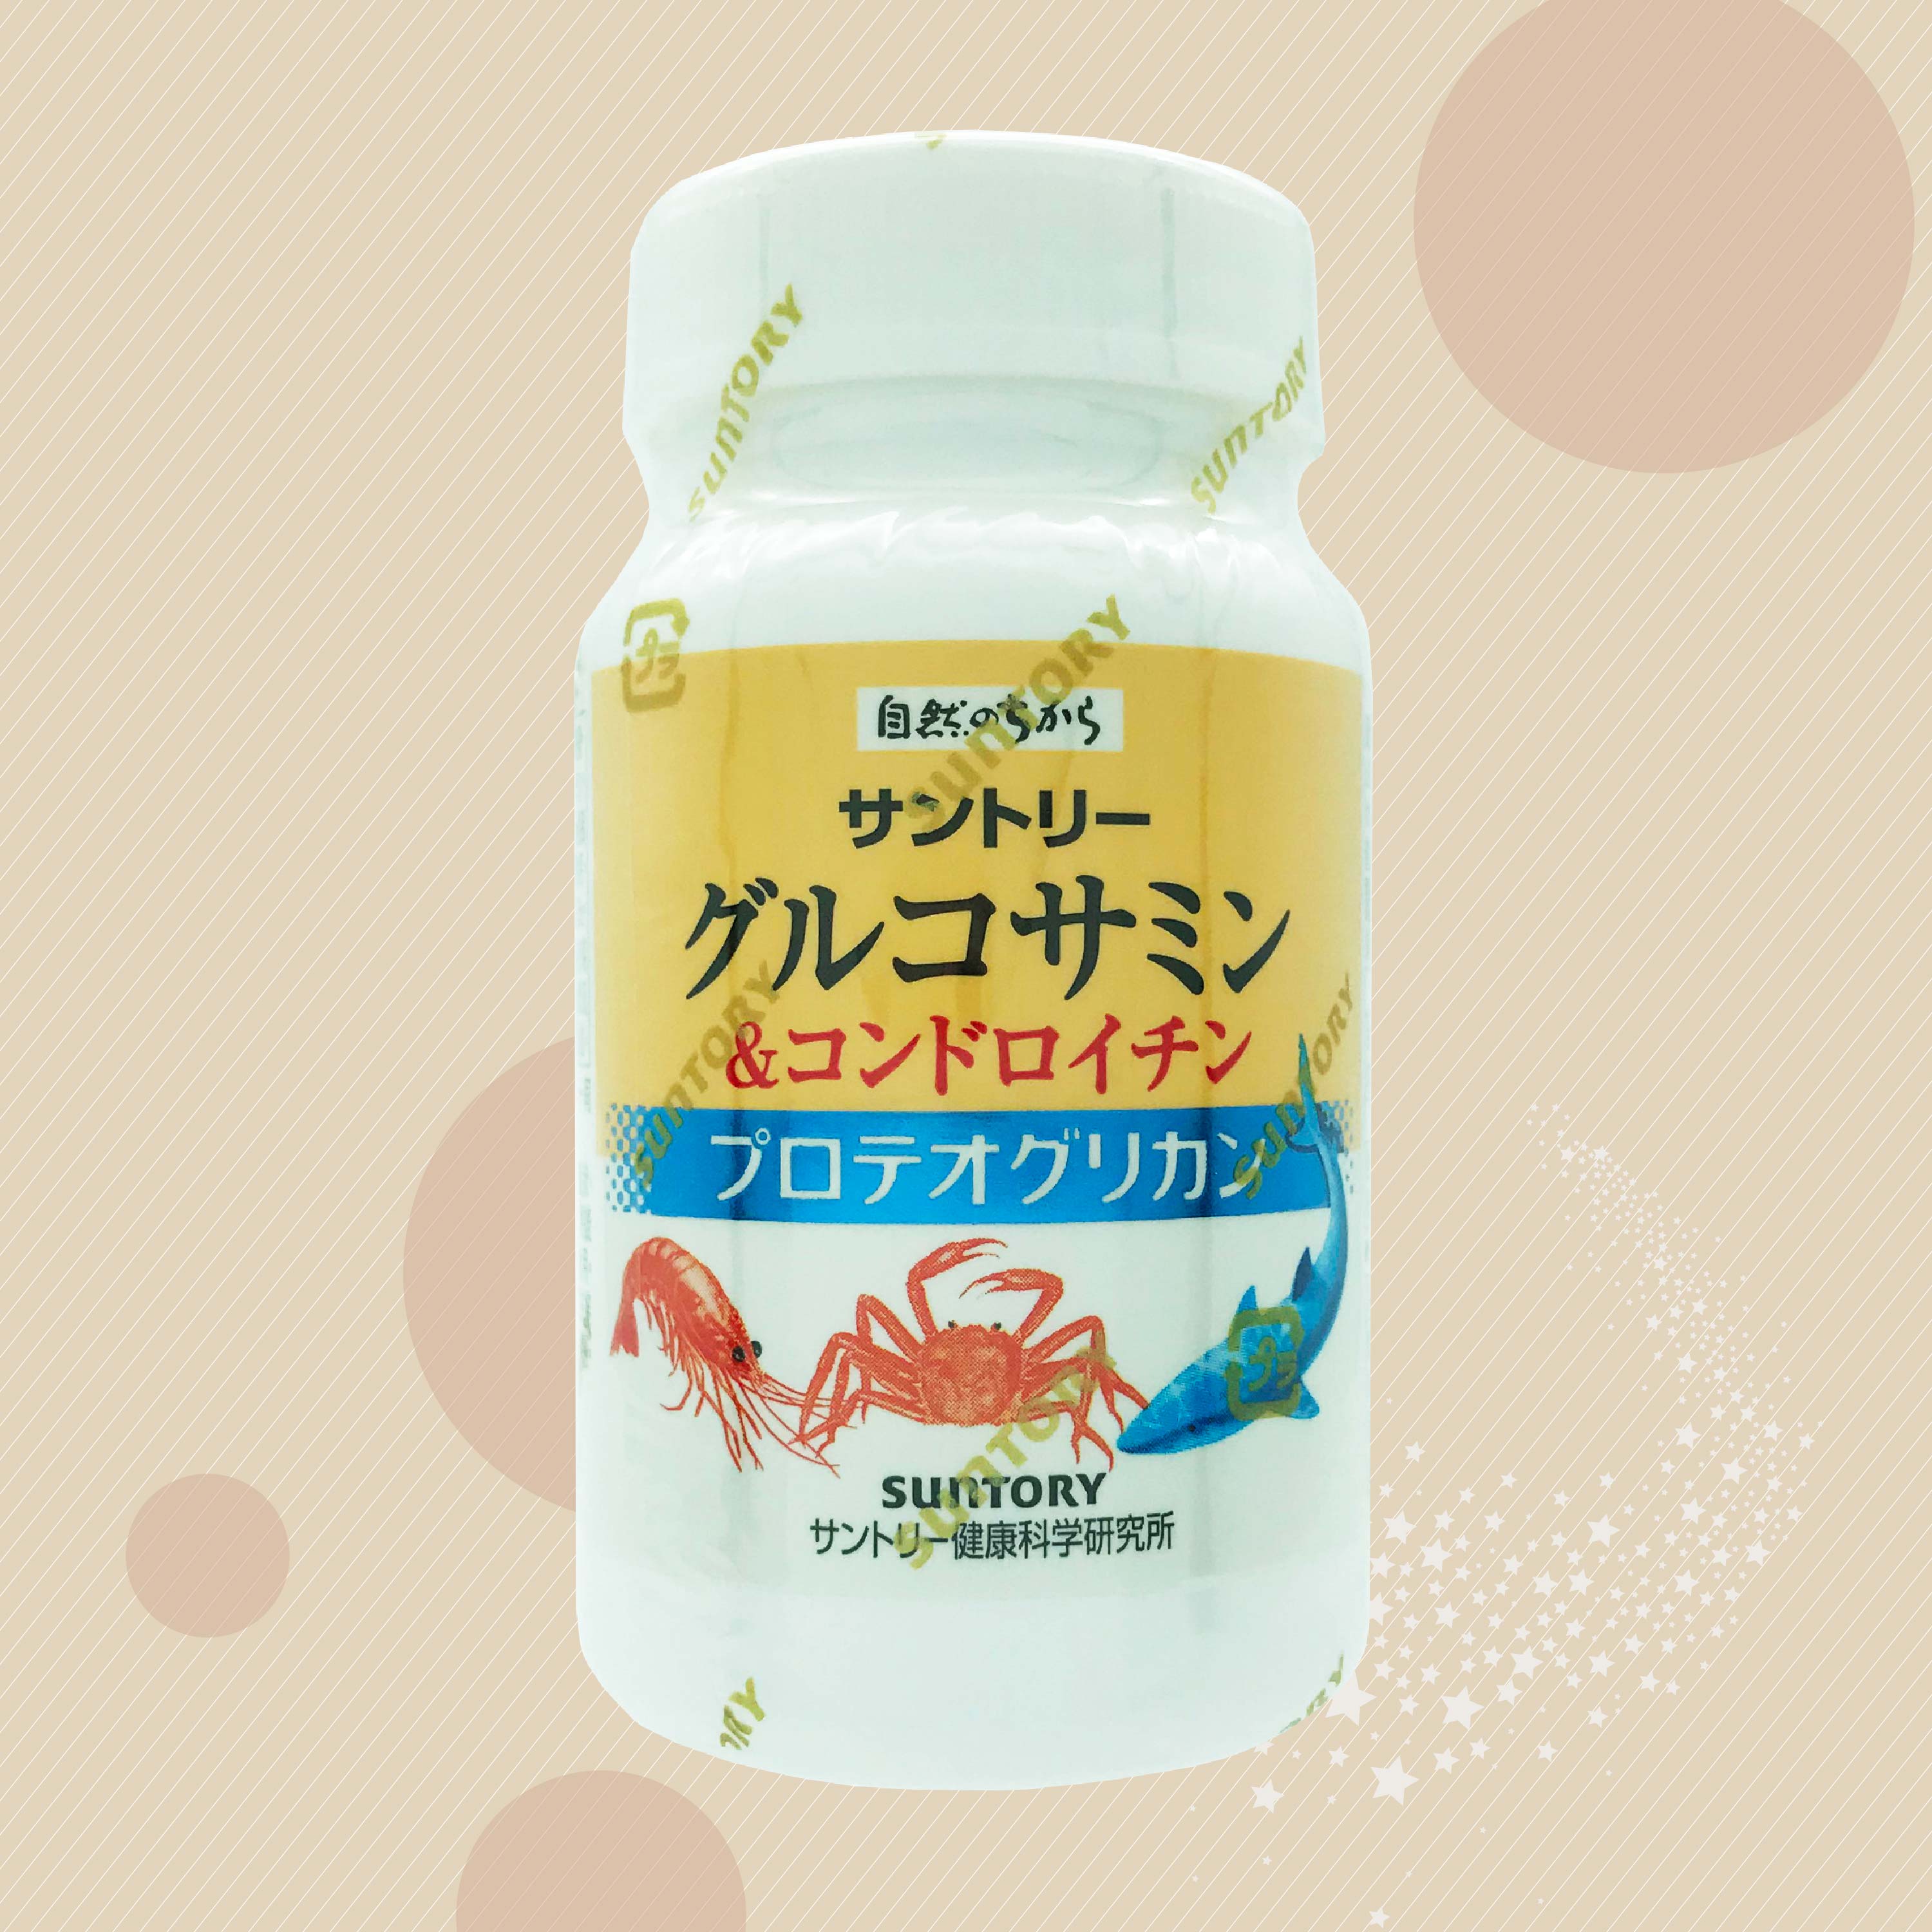 【Suntory】三得利 固力伸 (葡萄糖胺+鯊魚軟骨)瓶裝/隨身包(180錠/瓶)(6錠/包*30包)【uone】葡萄糖胺 鯊魚軟骨